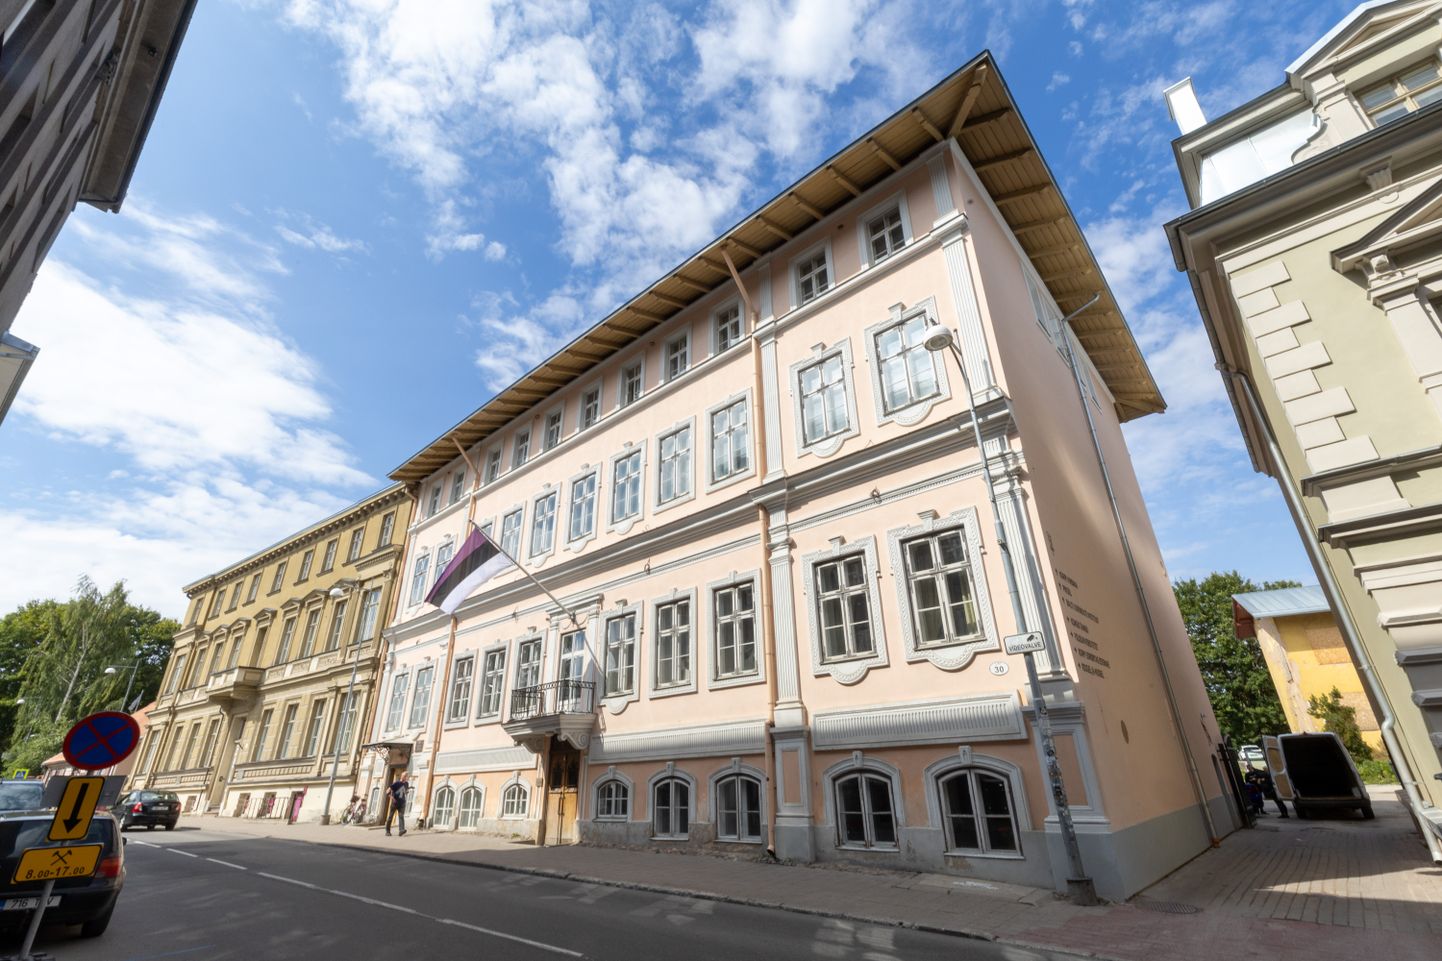 Lai 30 hoone Tartu südalinnas kuulub kultuurimälestiste registrisse.